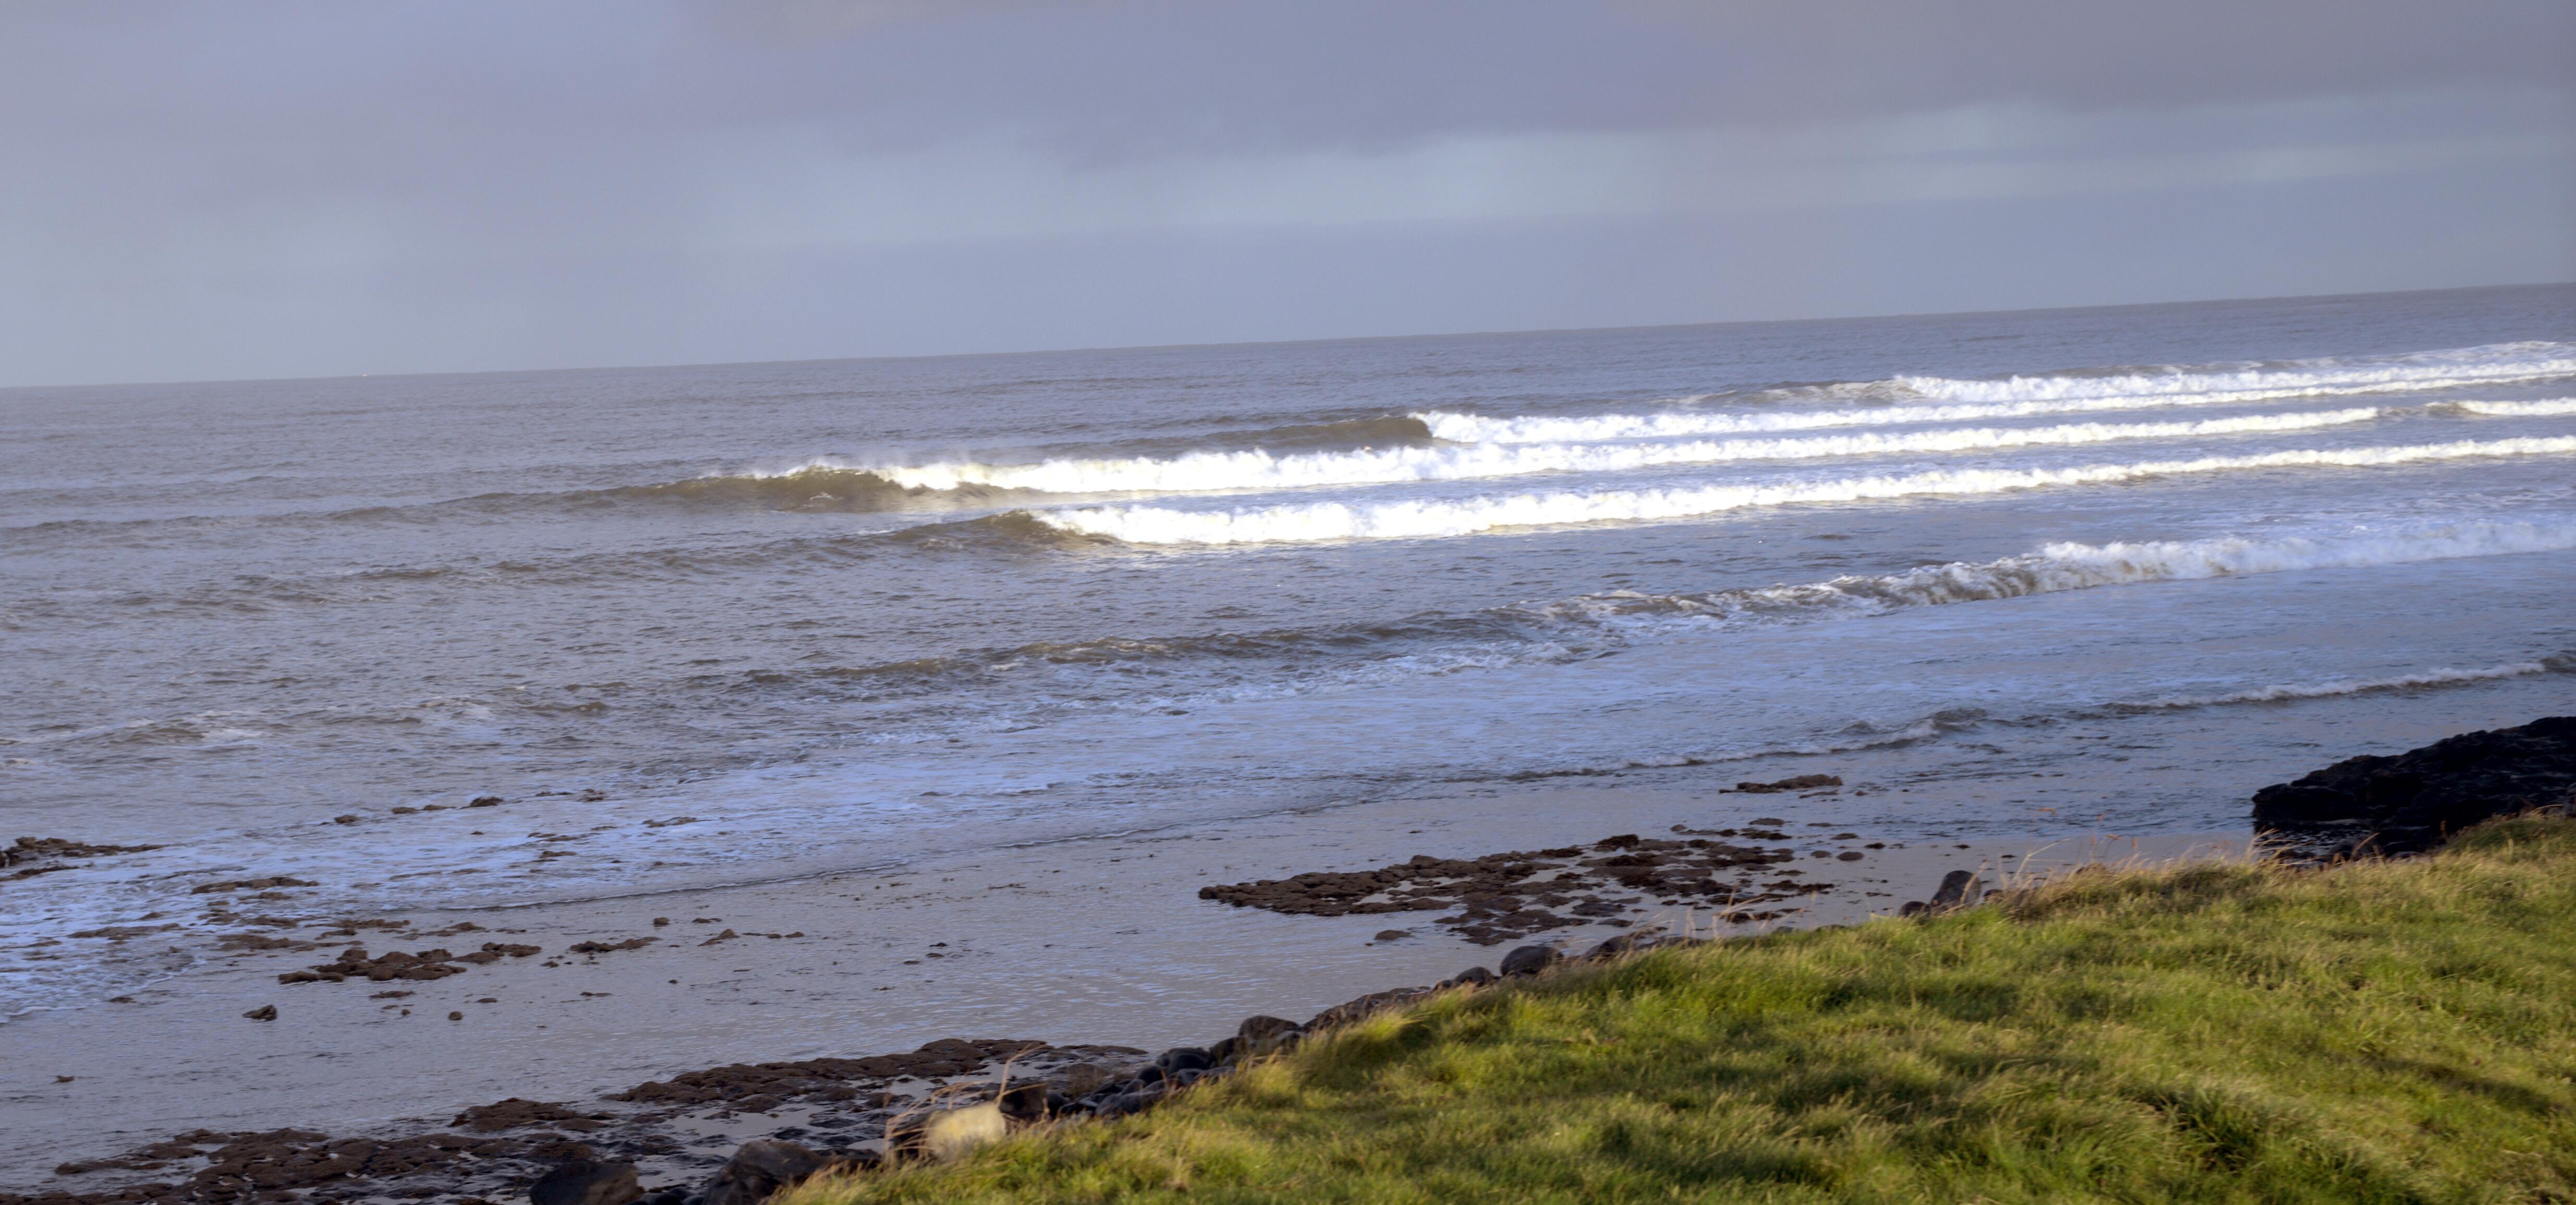 My surf renaissance | part 1 | surfing ireland 2022 |......